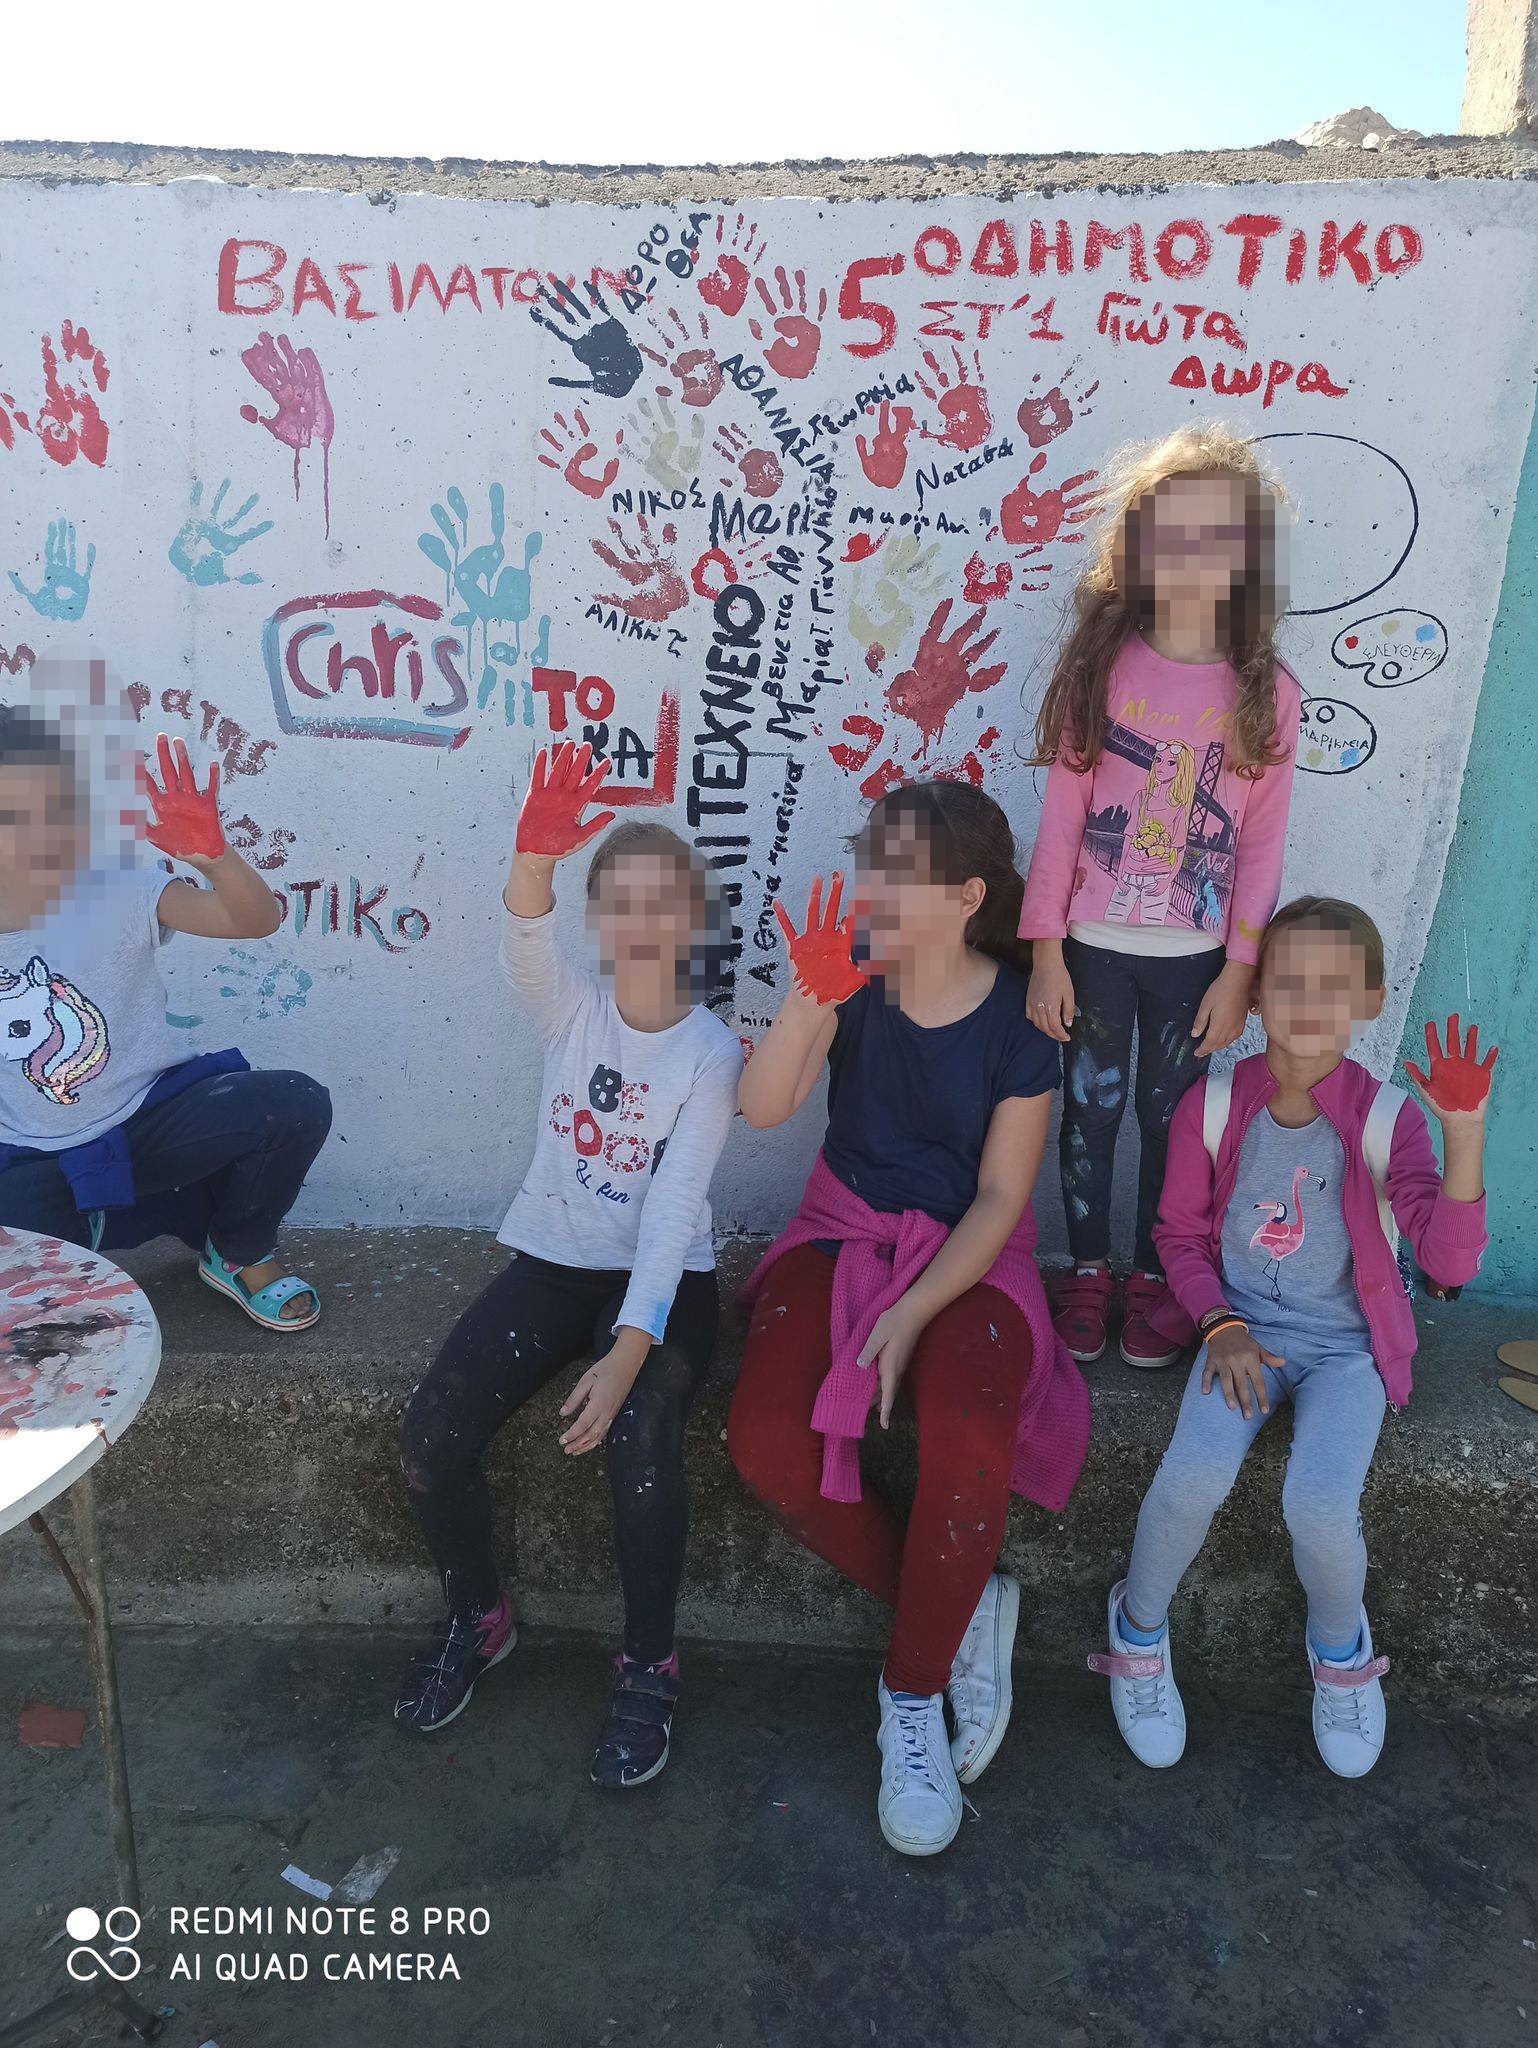 Δήμος Ήλιδας: Η τοιχογραφία του Παλουκίου στο χάρτη με τις κορυφαίες ελληνικές τοιχογραφίες- Παγκόσμια ημέρα street art και ειδικό αφιέρωμα για δημιουργίες σε όλη την Ελλάδα (photos)